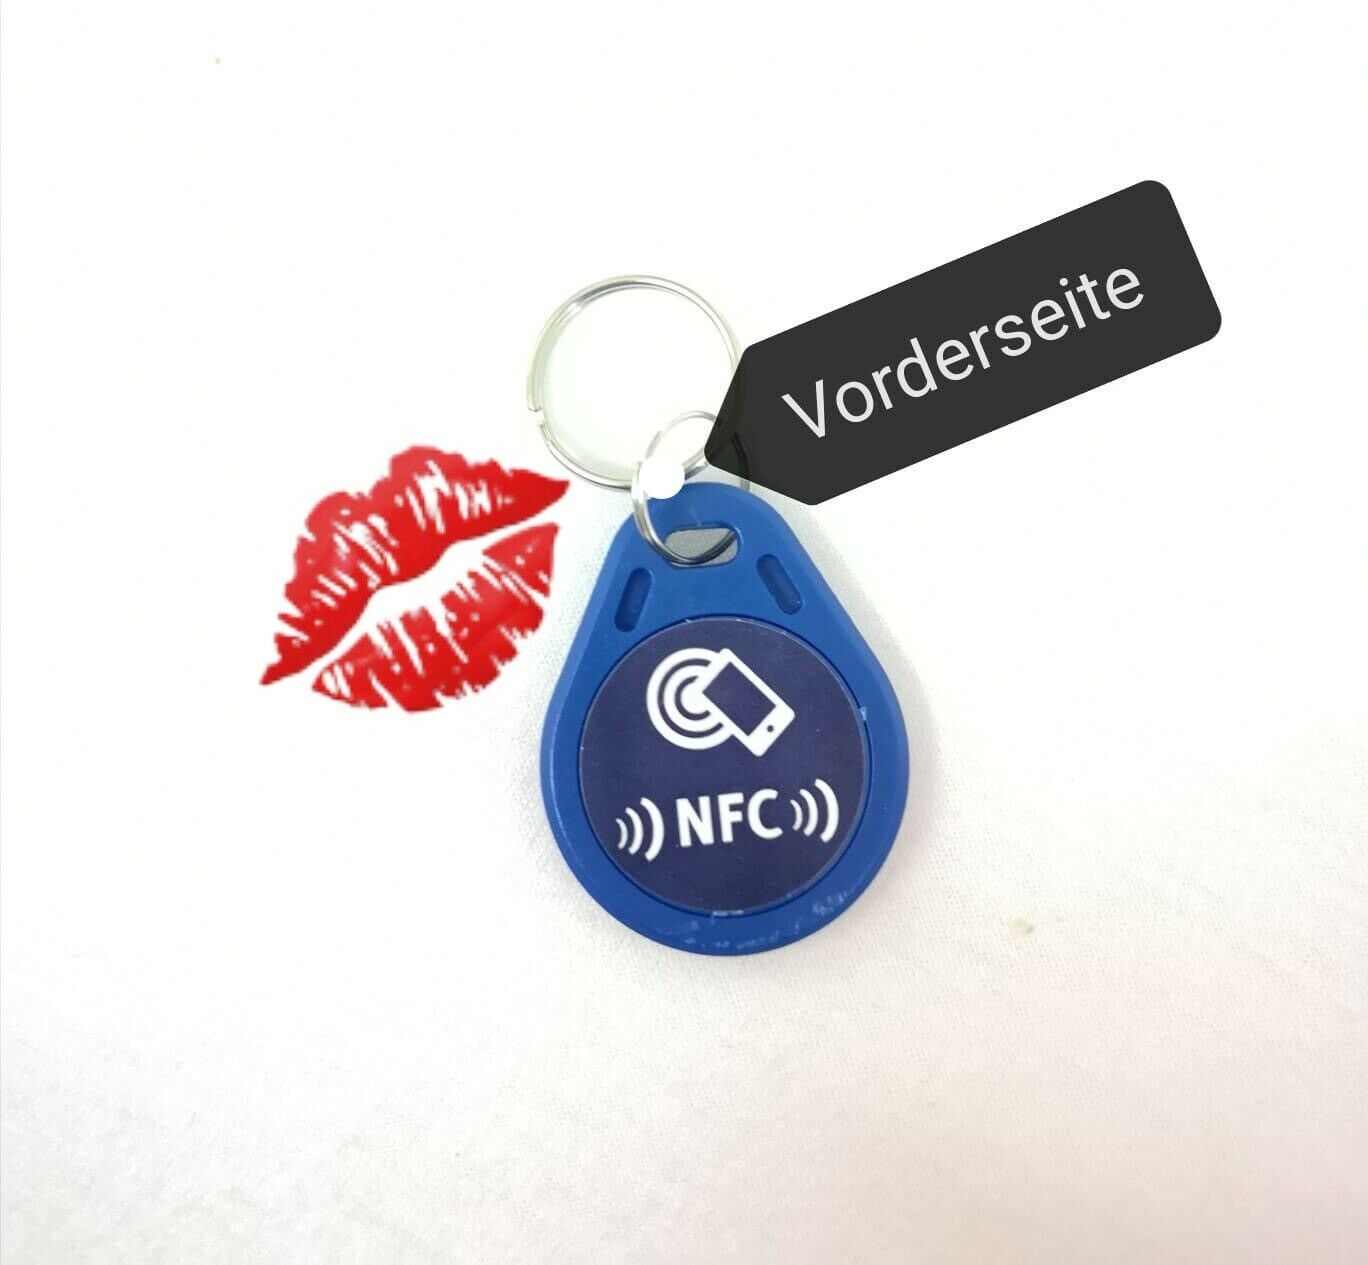 1 Stk.NFC-NTag216 als Schlüsselanhänger in blau